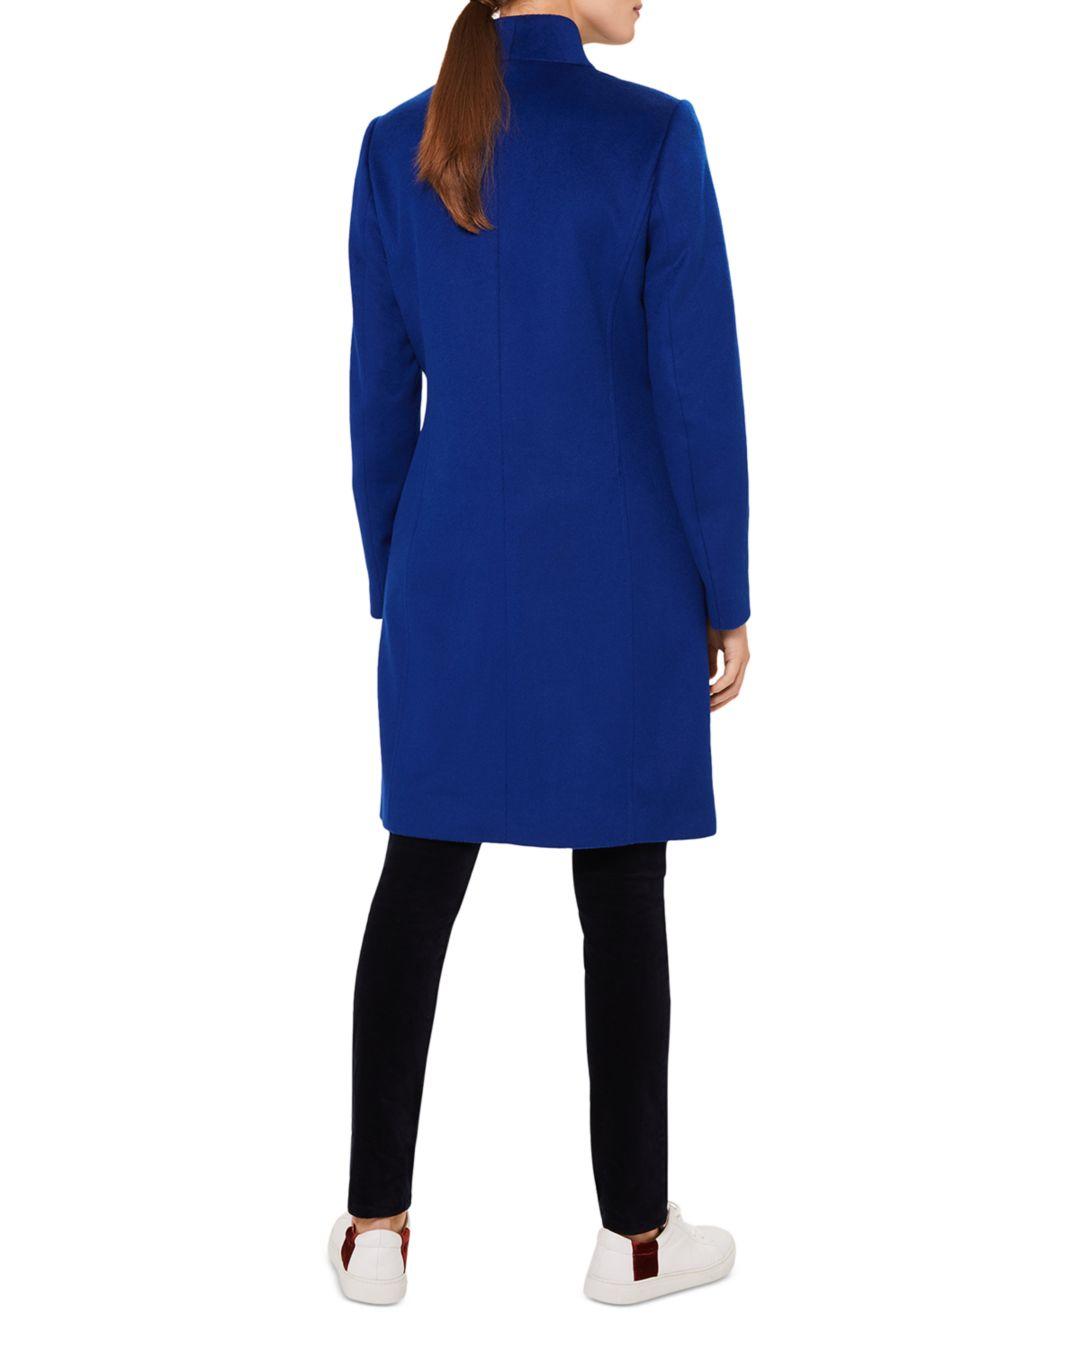 Hobbs Mandy Wool Coat in Cobalt (Blue) - Lyst